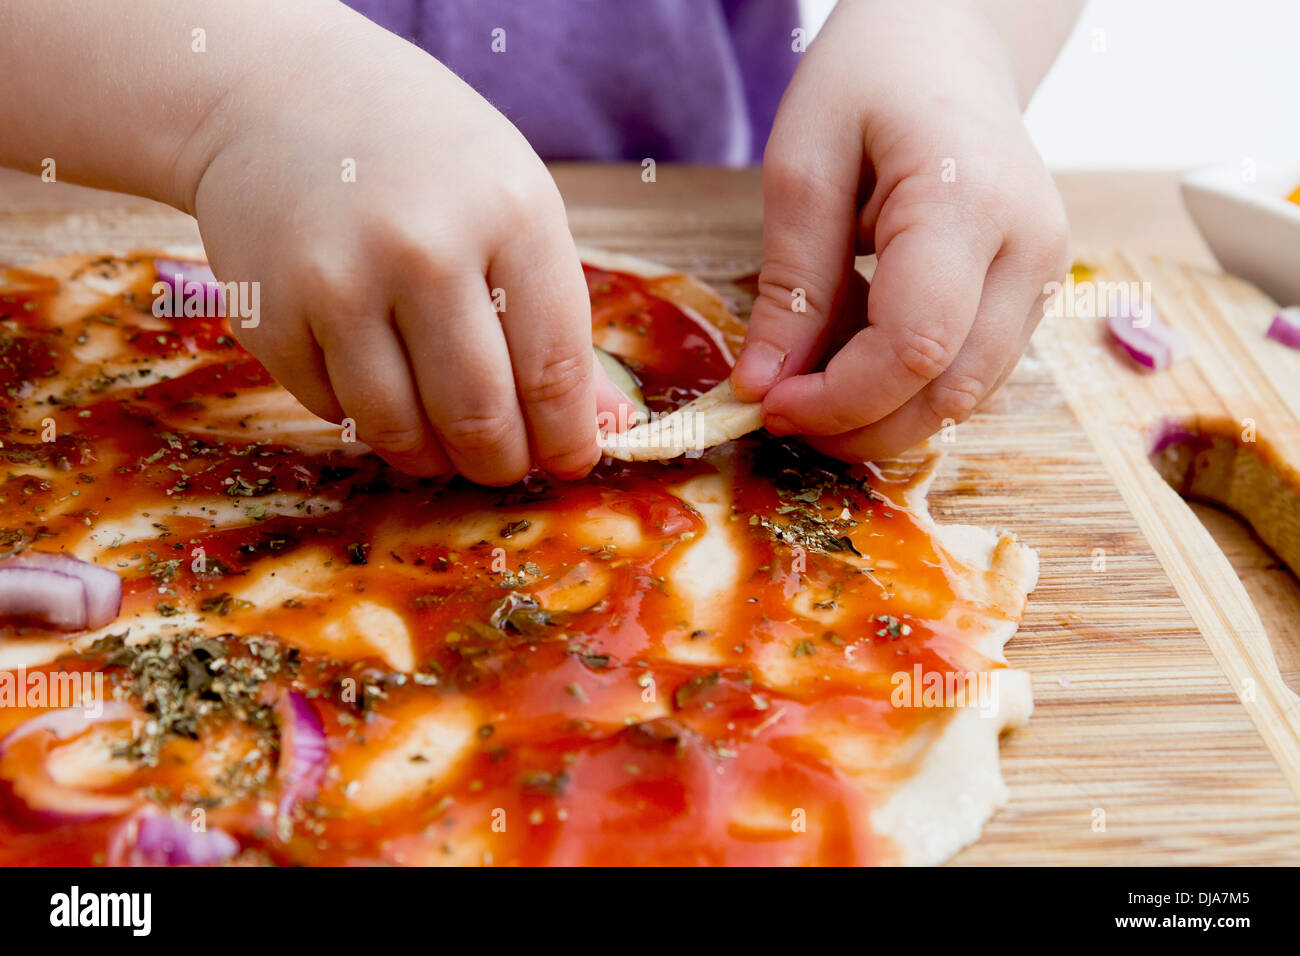 small hands preparing fresh pizza. Studio shot Stock Photo